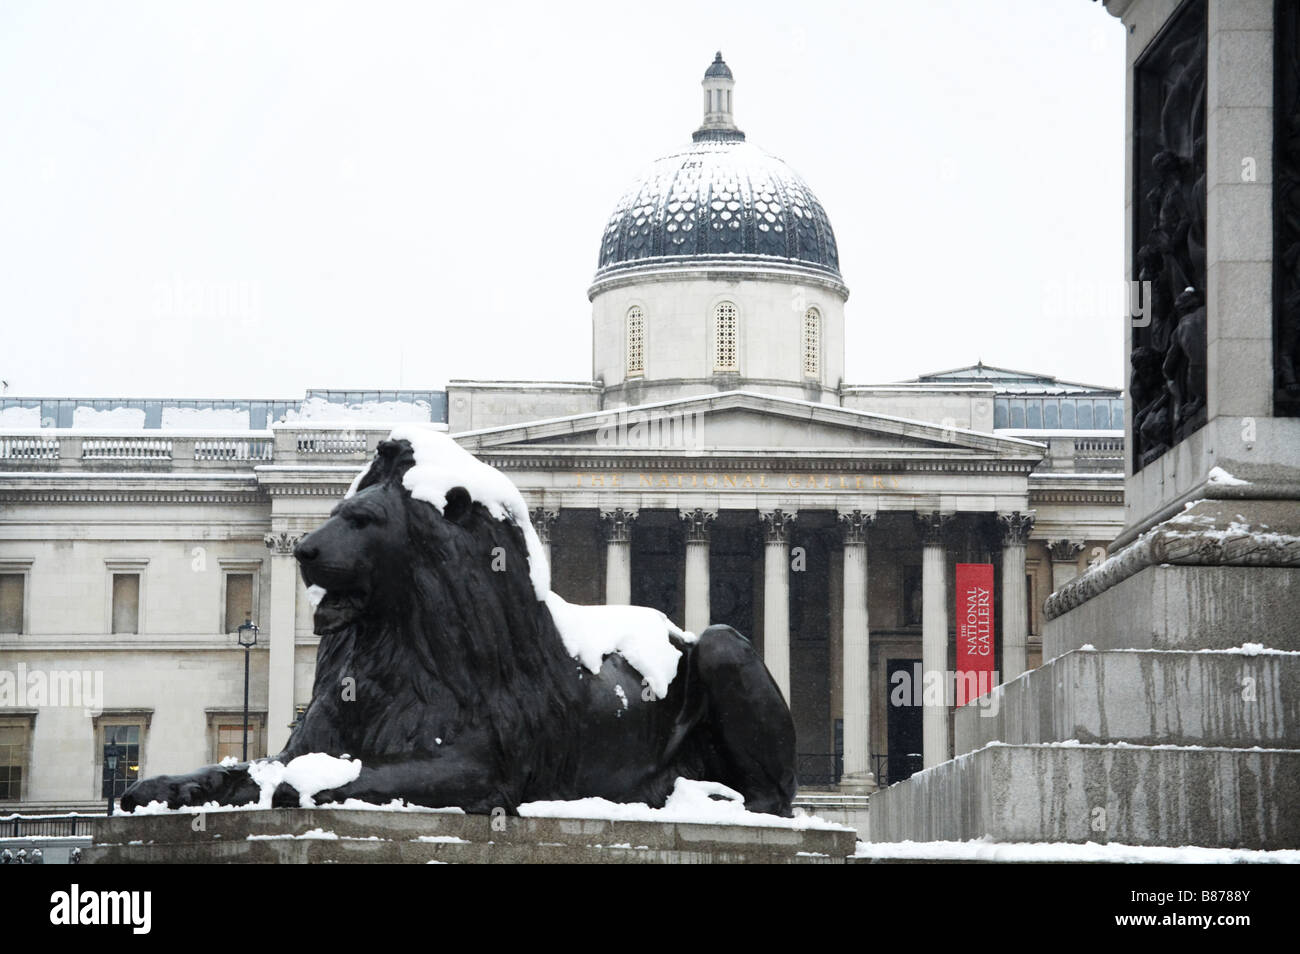 Neige sur Trafalgar square et la National Gallery de Londres Angleterre Royaume-Uni winter Banque D'Images